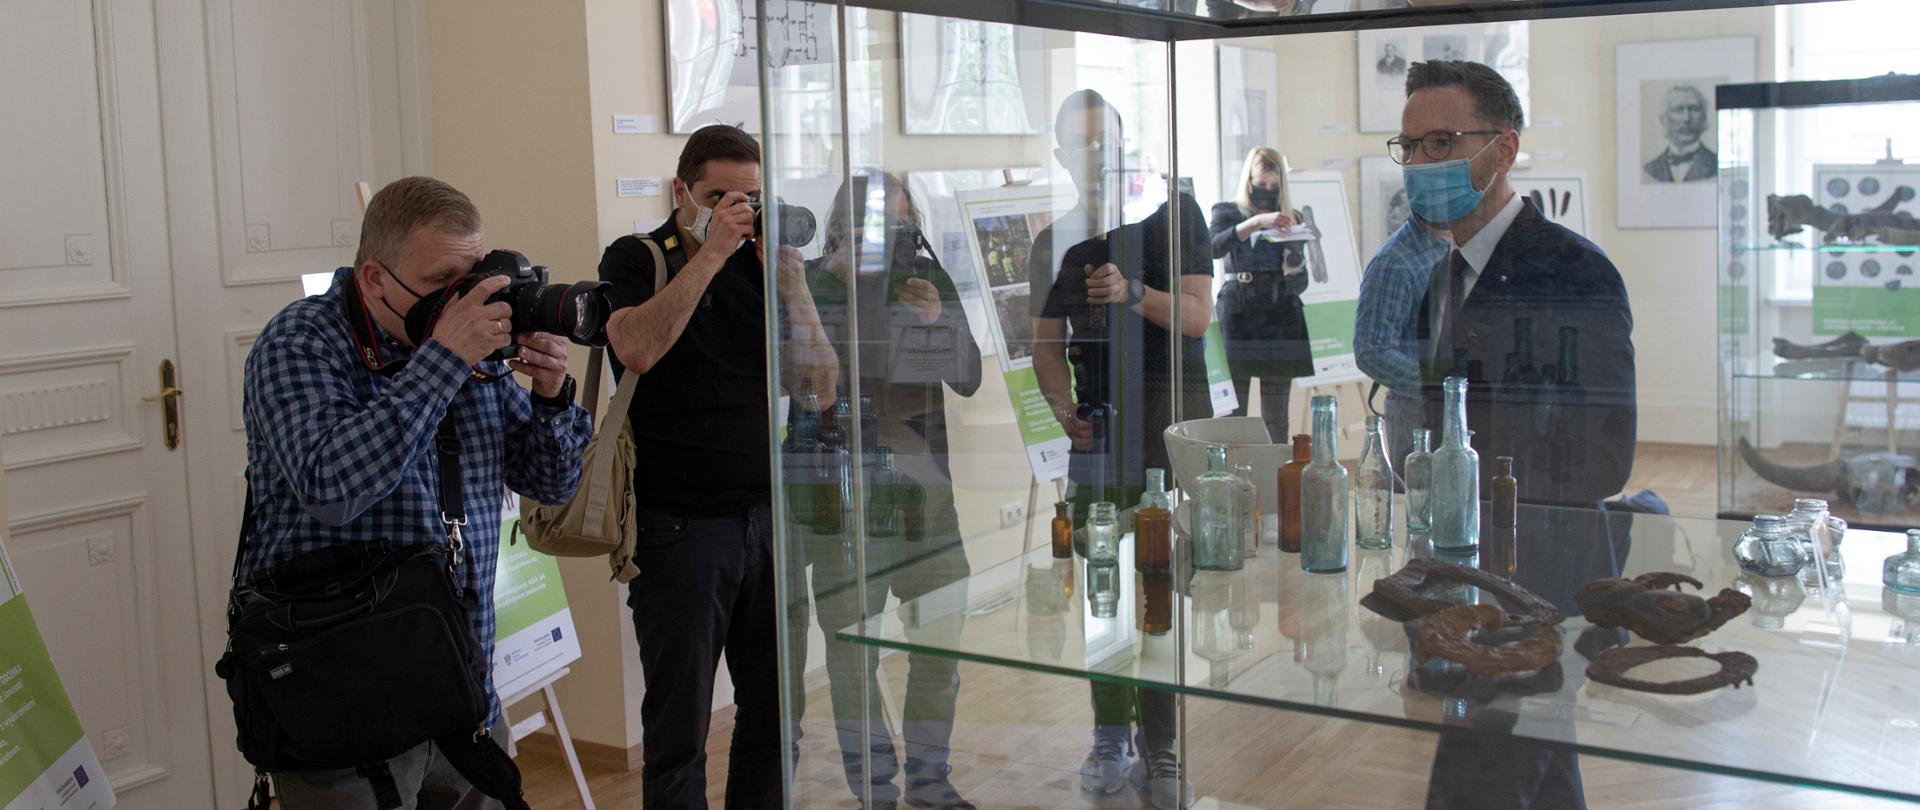 przed wyeksponowanymi w szklanej gablocie znaleziskami stoi wiceminister Waldemar Buda, którego fotografuje dwóch reporterów